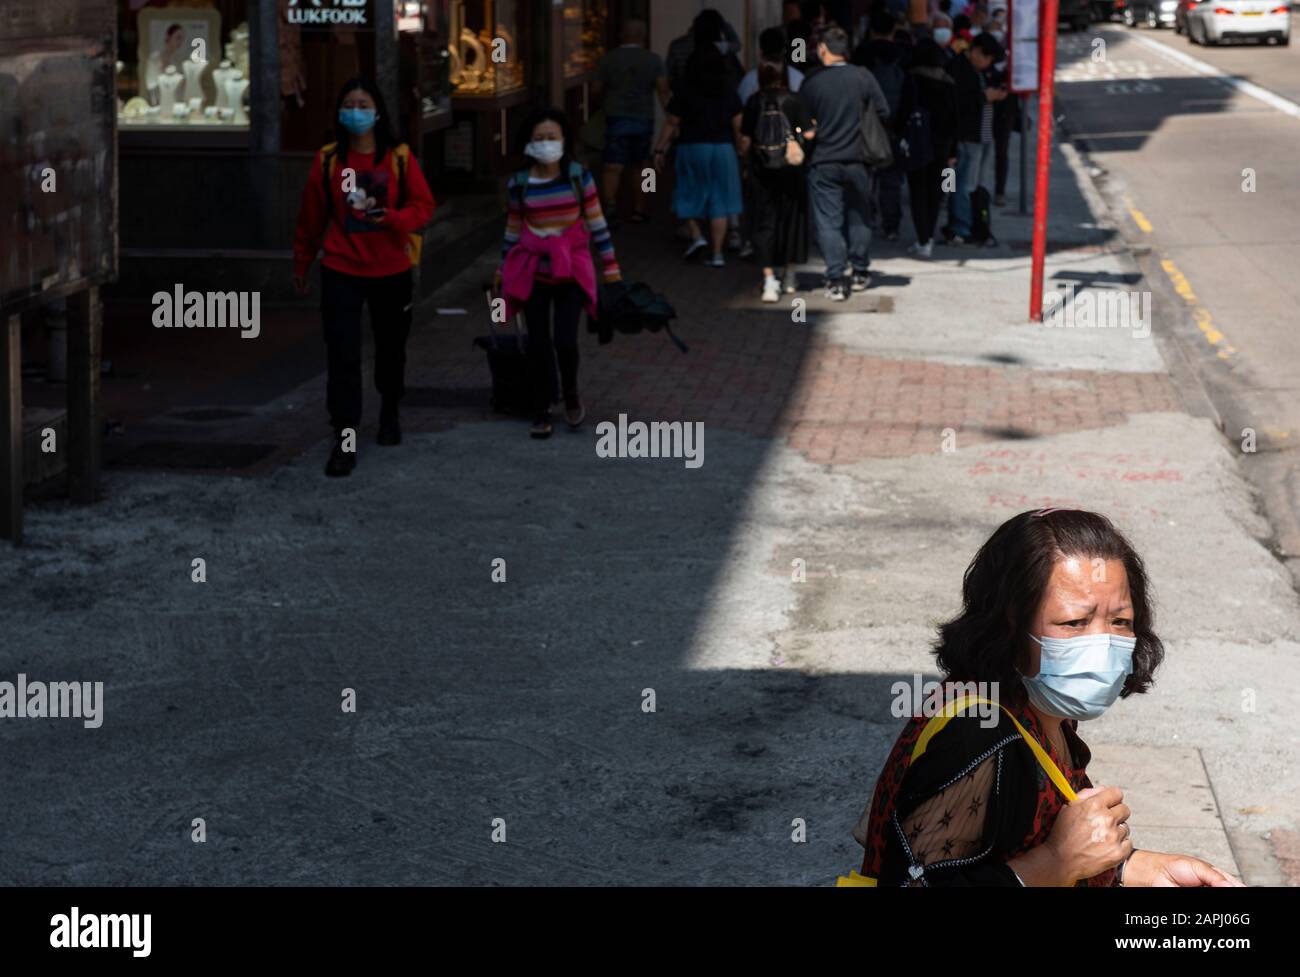 Una donna coprire il suo viso con una maschera sanitaria come lei attende alla stazione degli autobus dopo che i primi casi di coronavirus sono stati confermati a Hong Kong. La Cina ha implementato un sistema di trasporto pubblico e un blocco aeroportuale in diverse città per rallentare la diffusione del coronavirus di Wuhan. Foto Stock